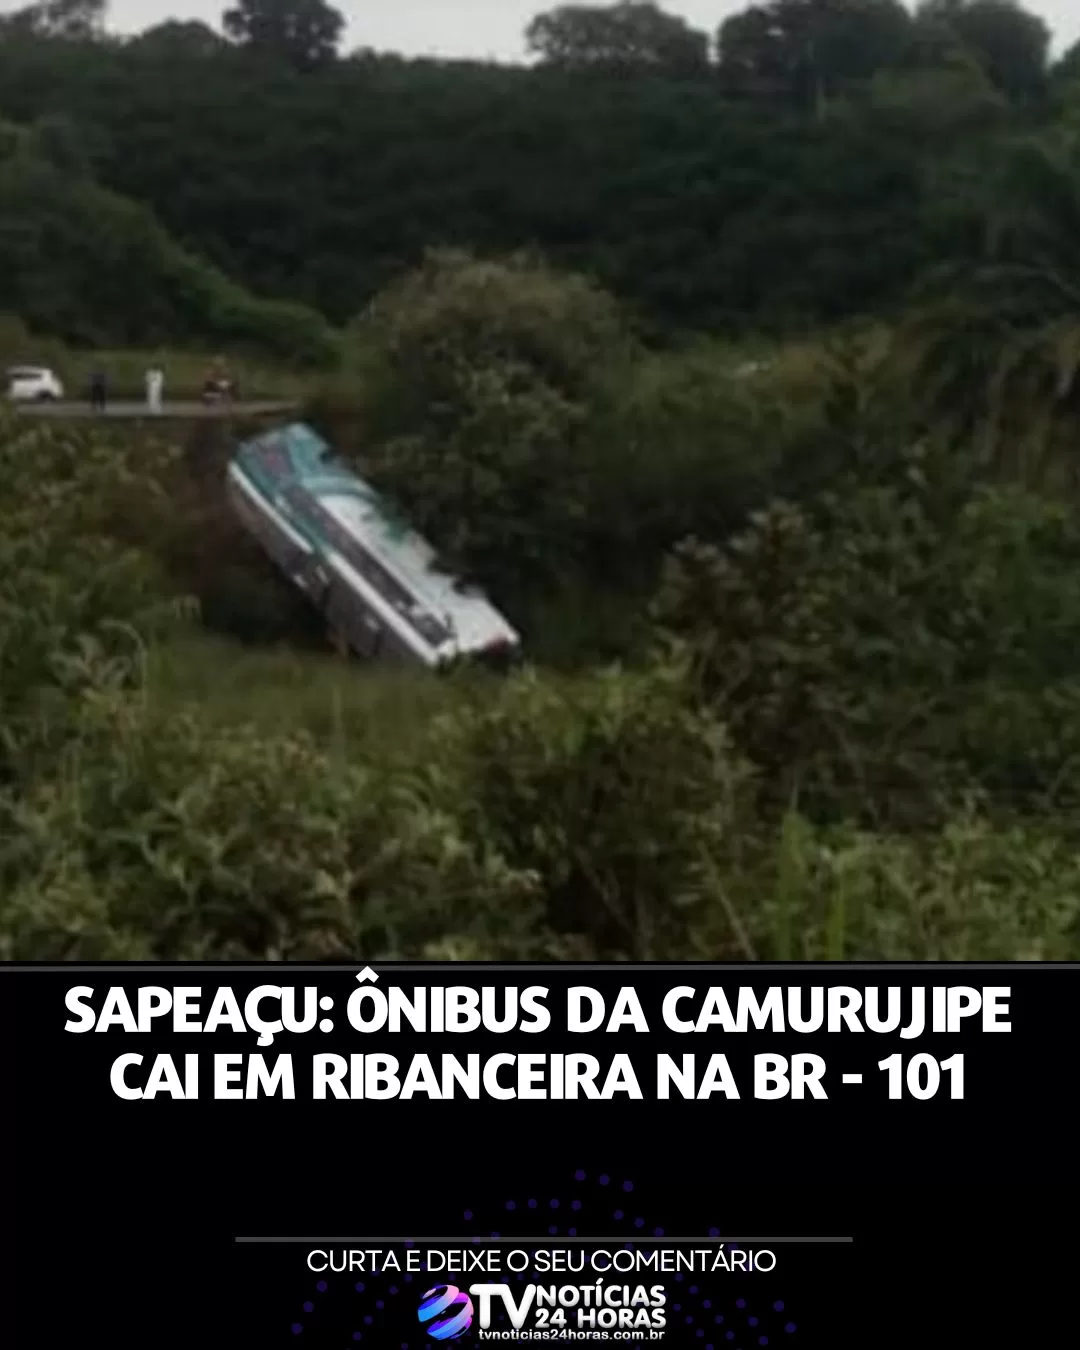 ônibus, Sapeaçu, Camurujipe, notícias, acidente, Bahia, Salvador, Maracás, ribanceira